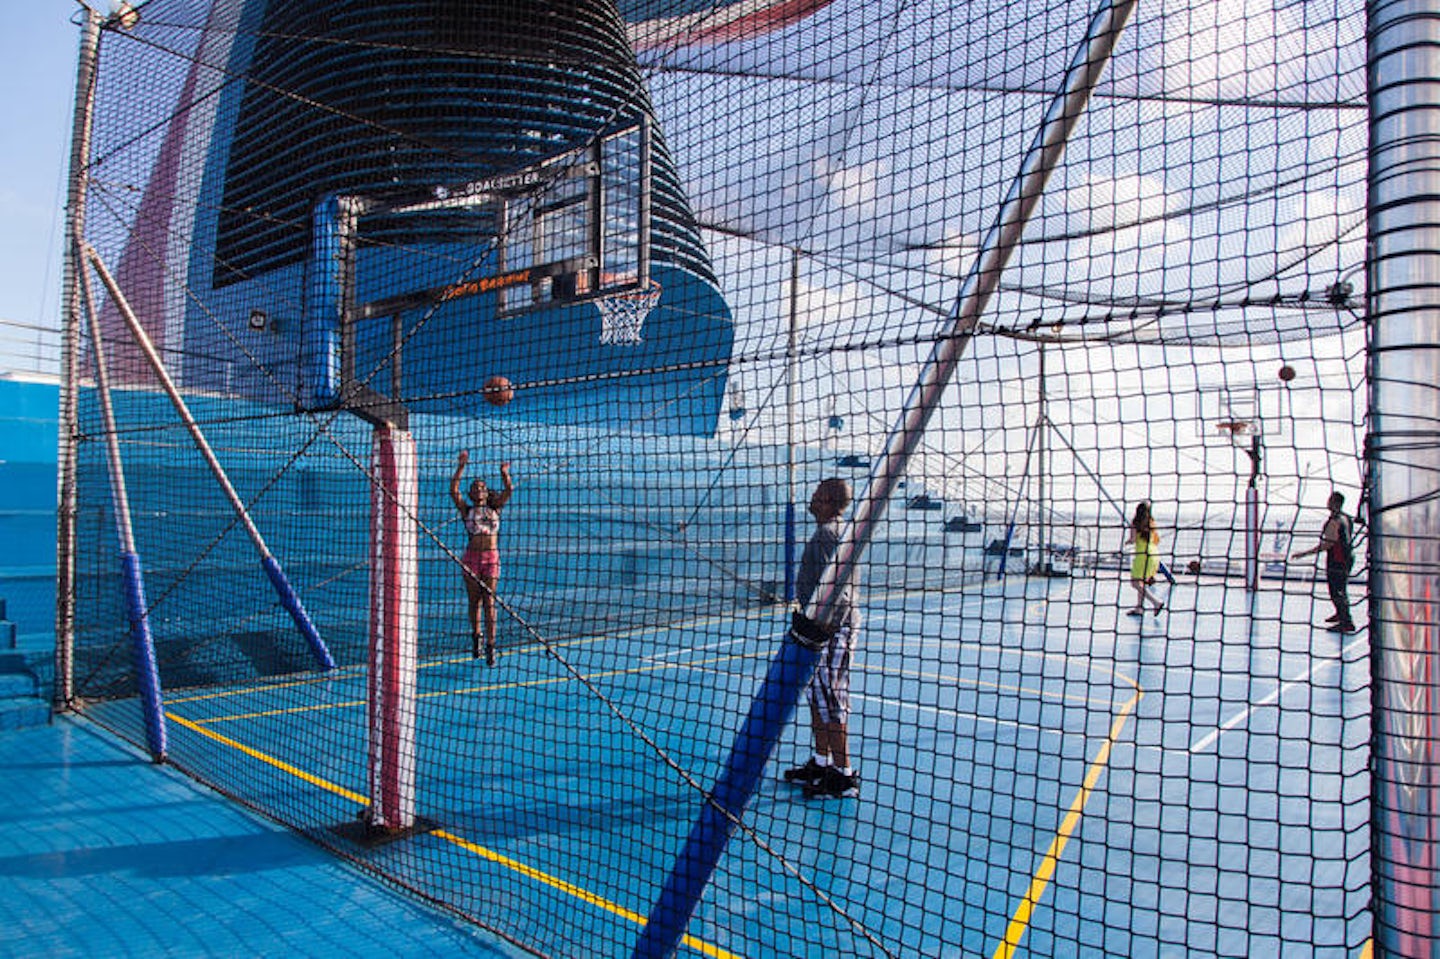 Basketball Court on Carnival Splendor